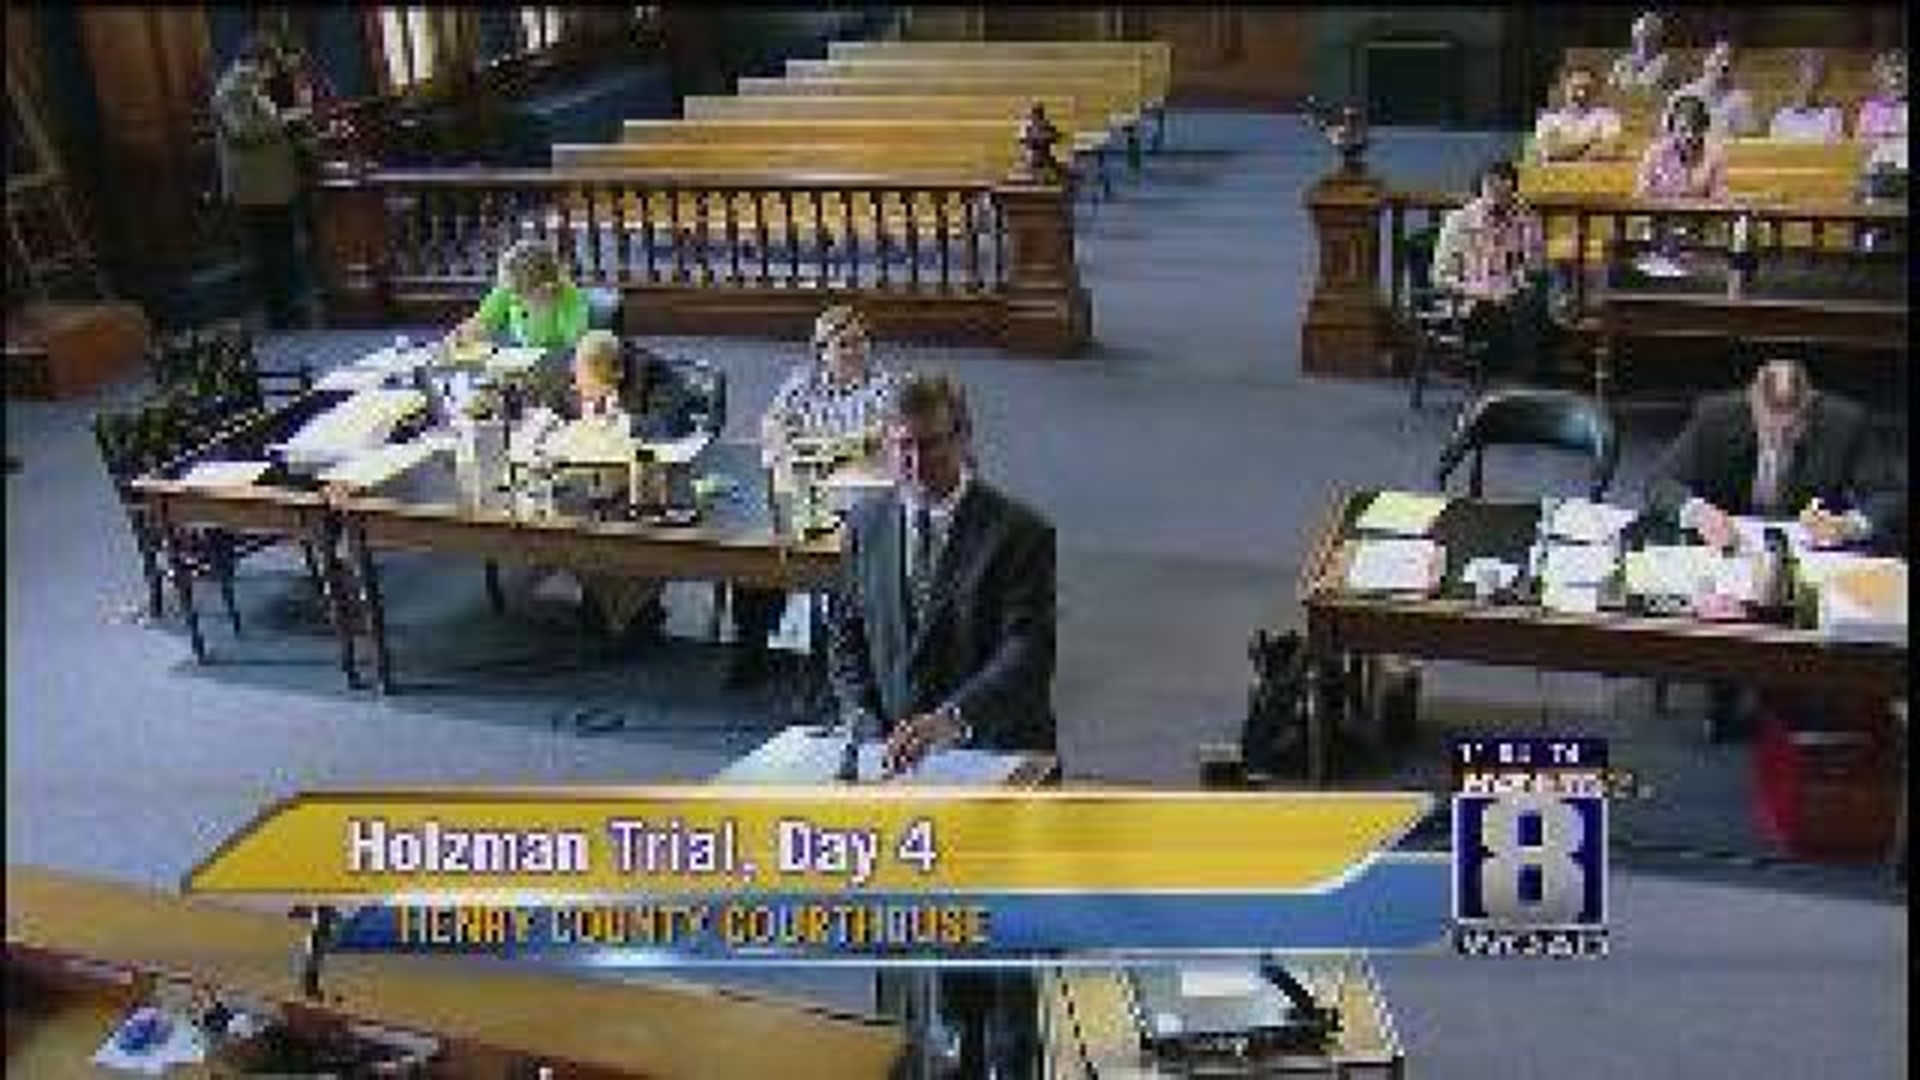 Doctor Testifys in Holzman Trial